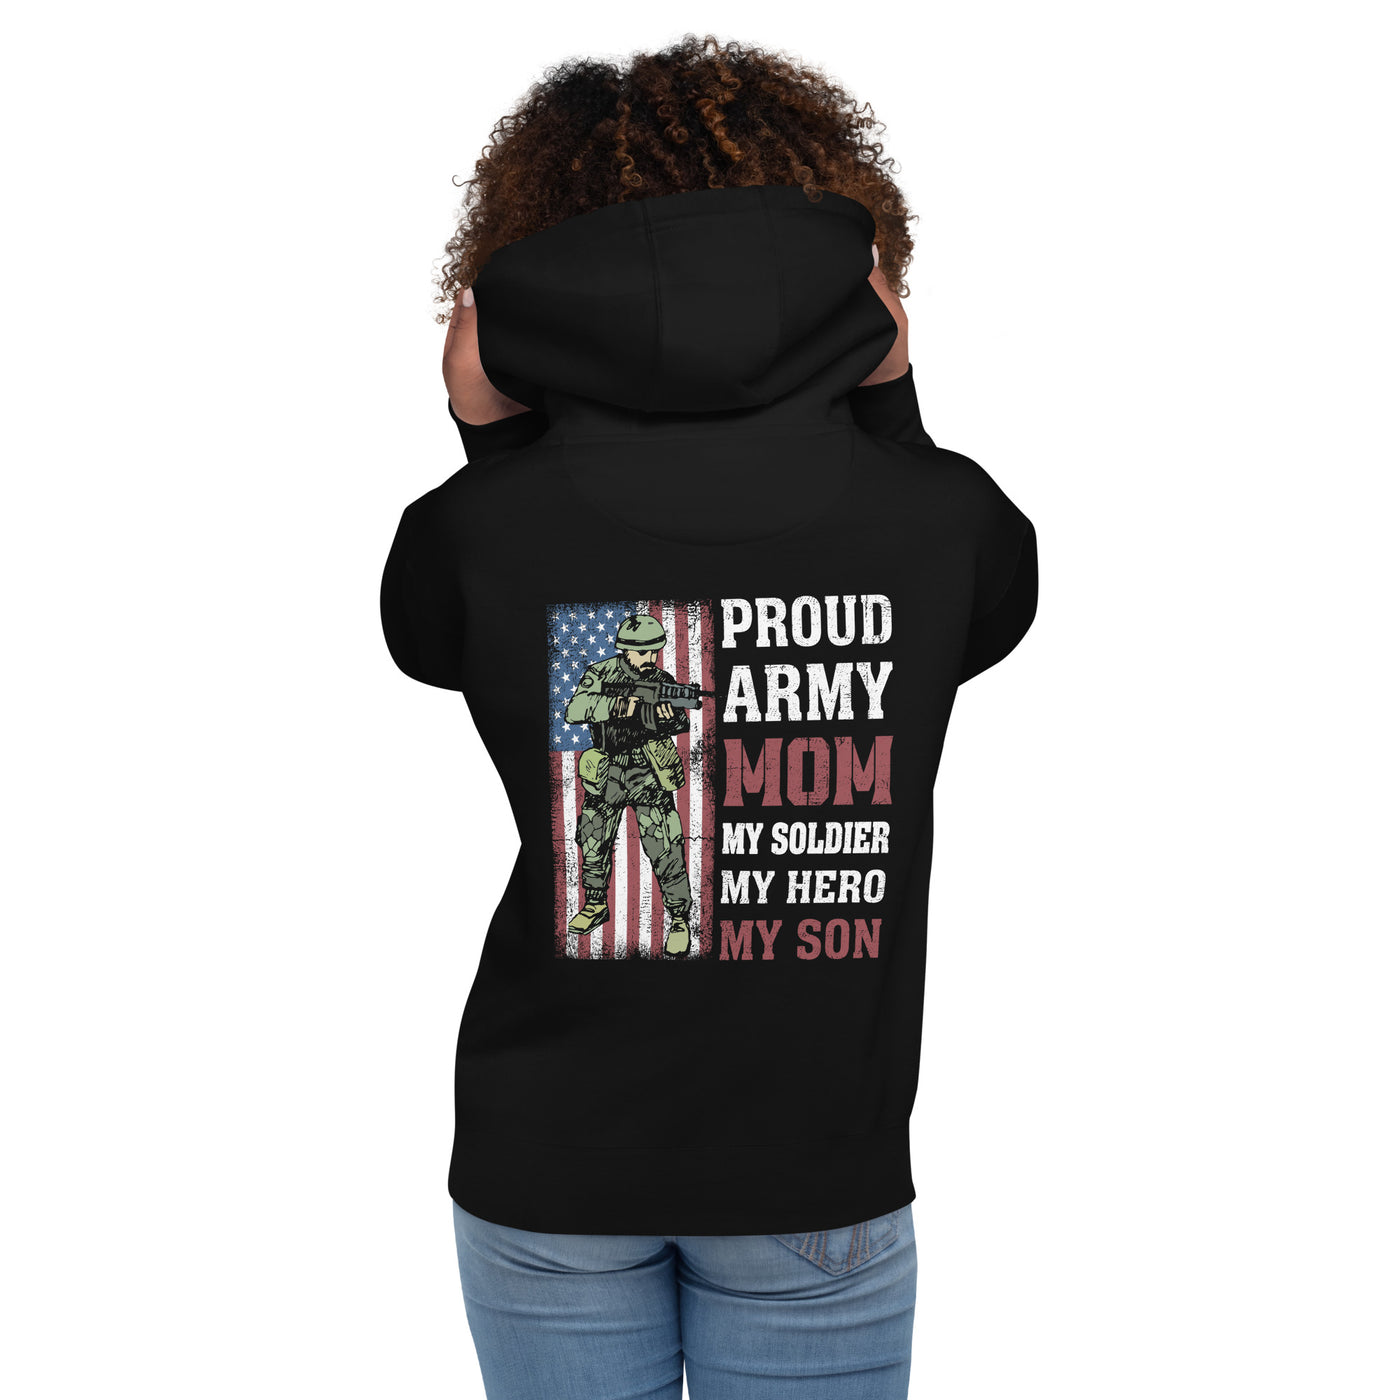 Proud Army Mom - Unisex Hoodie (back print)